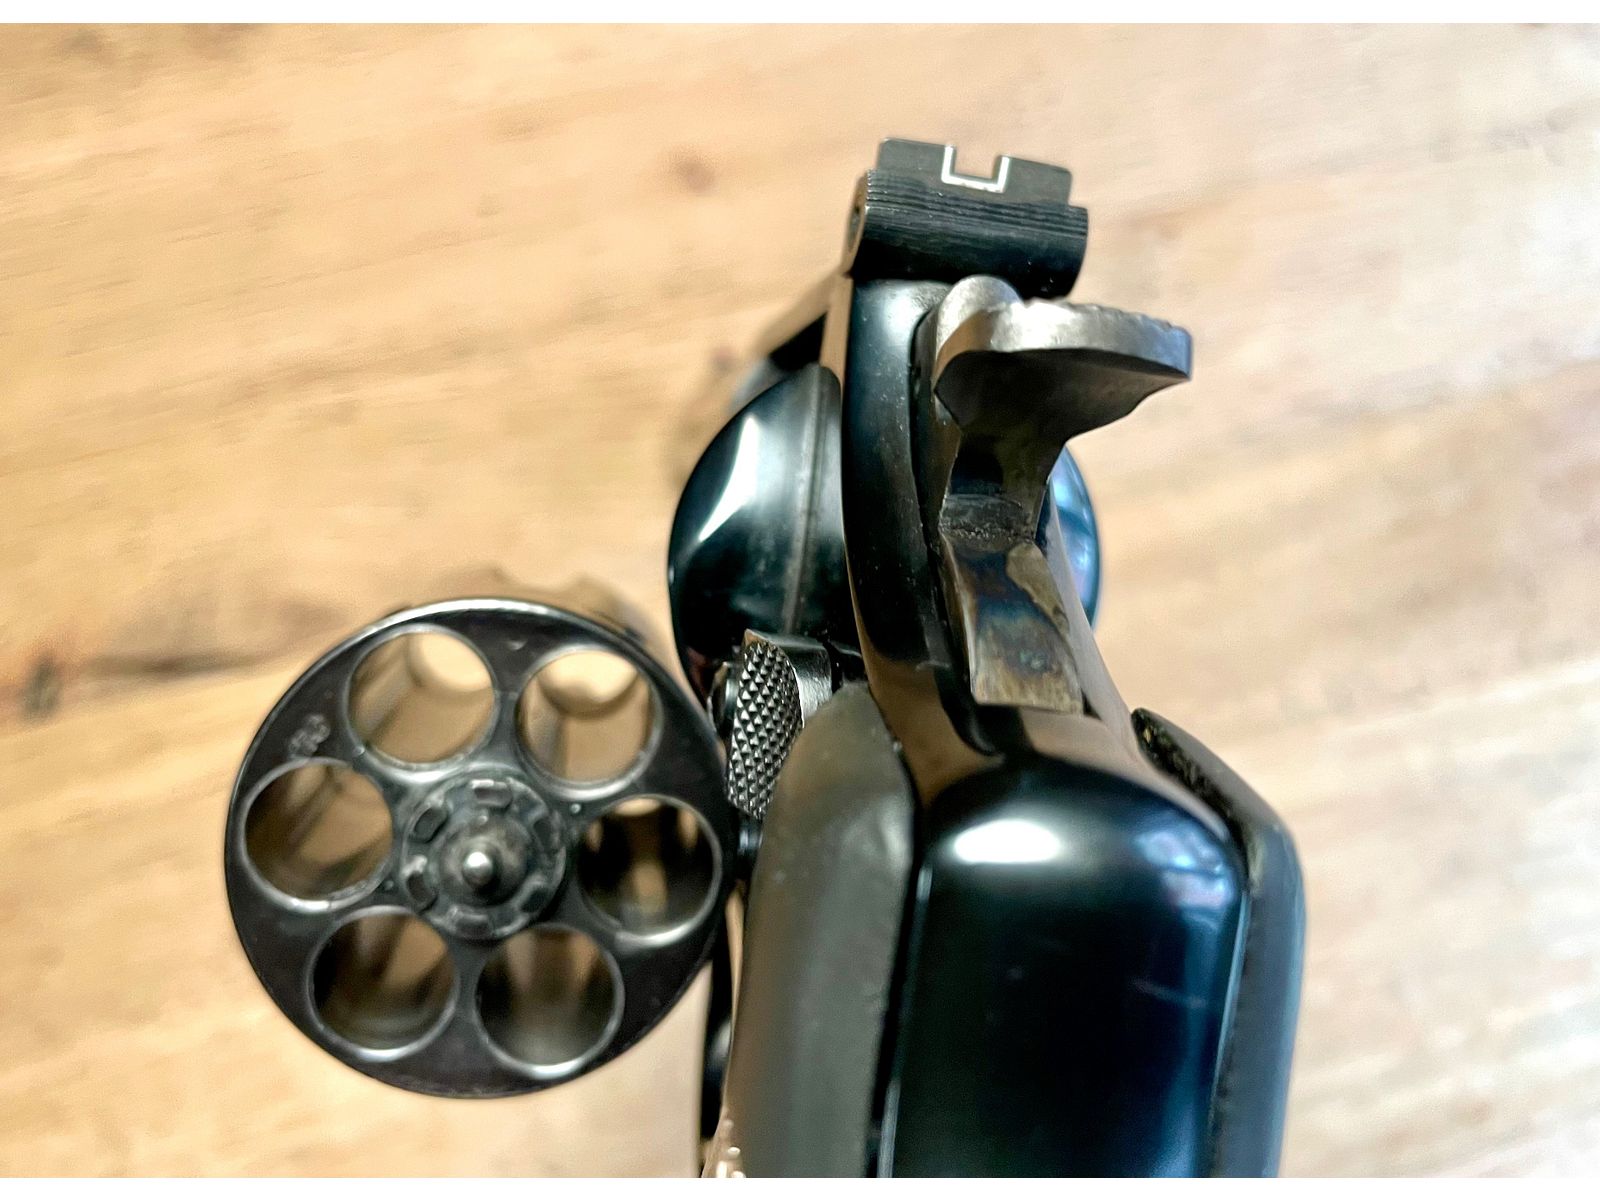 Smith Wesson S&W Mod. 29 Classic .44 Remington 6“ Lauf